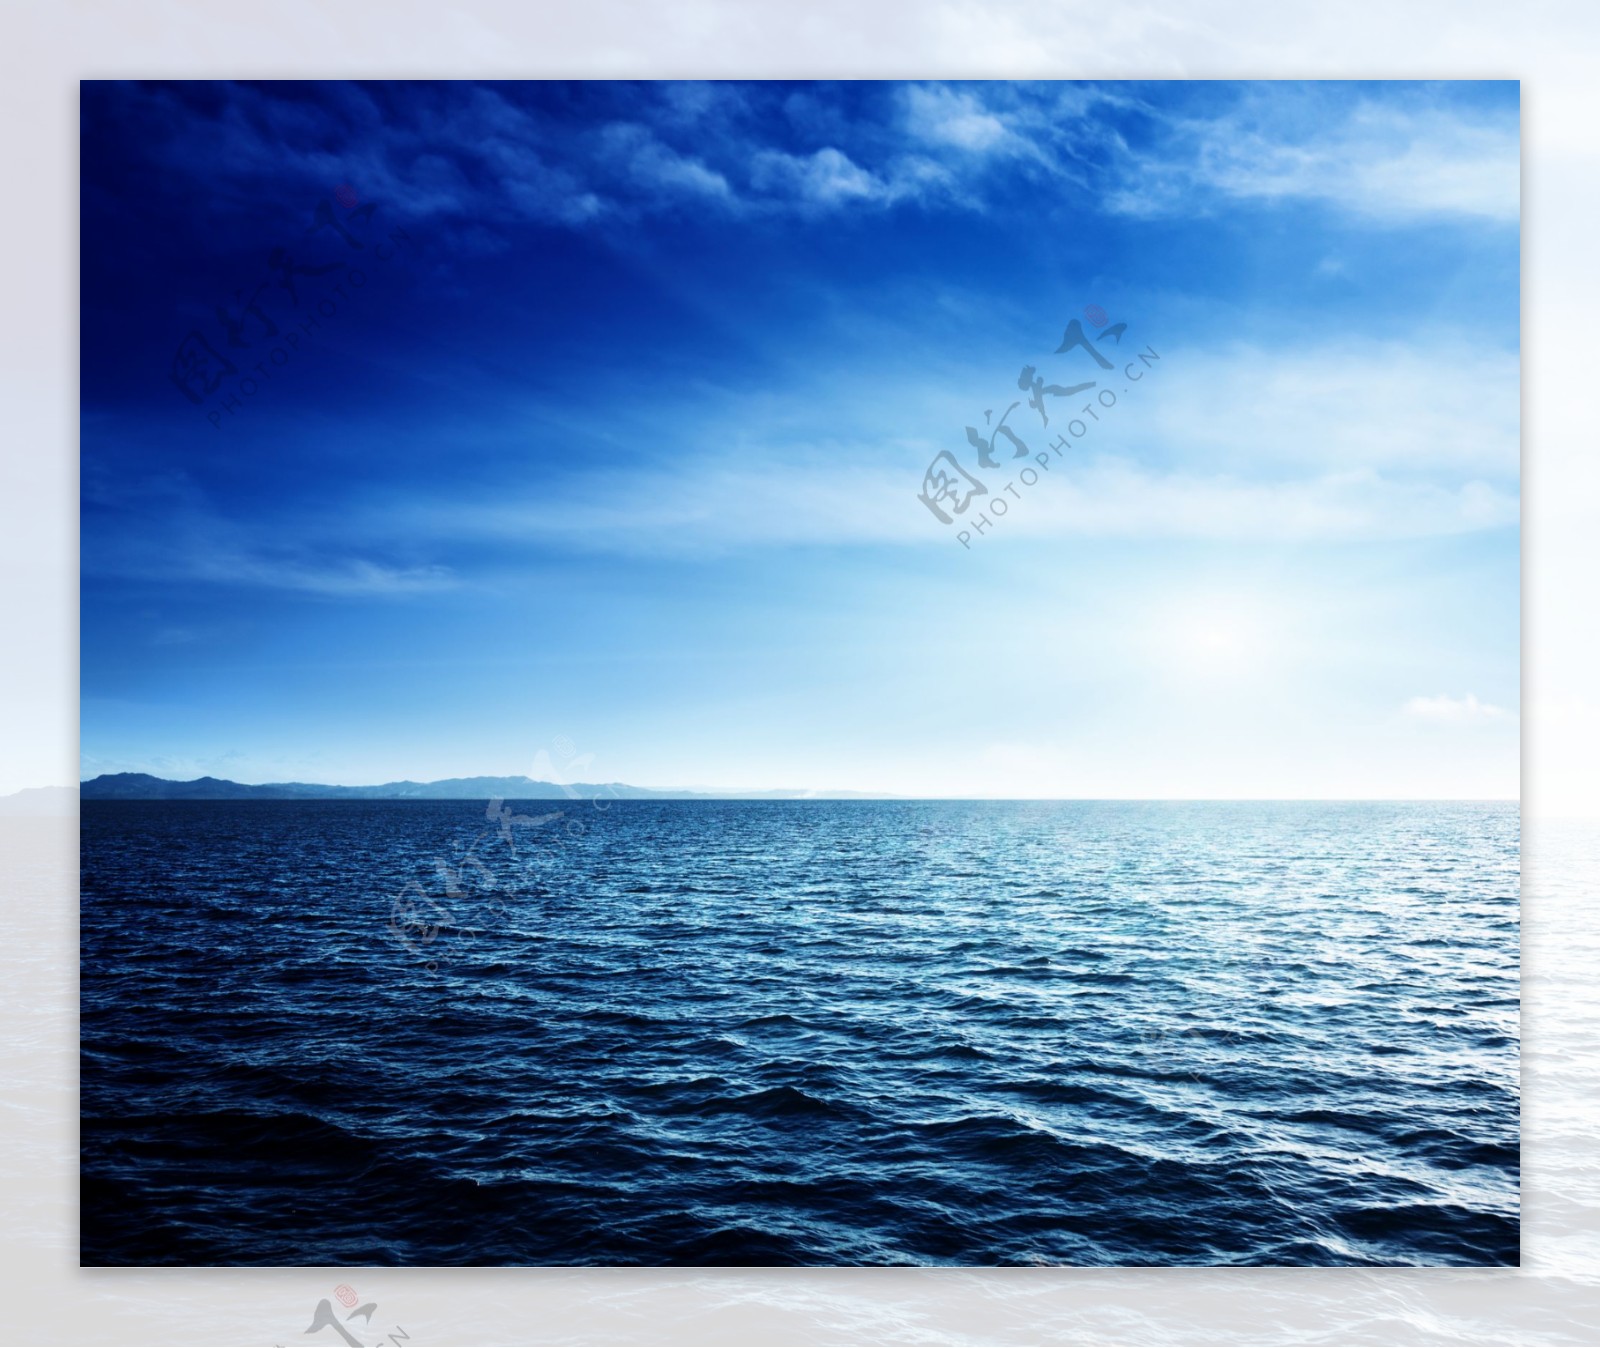 蔚蓝海洋图片